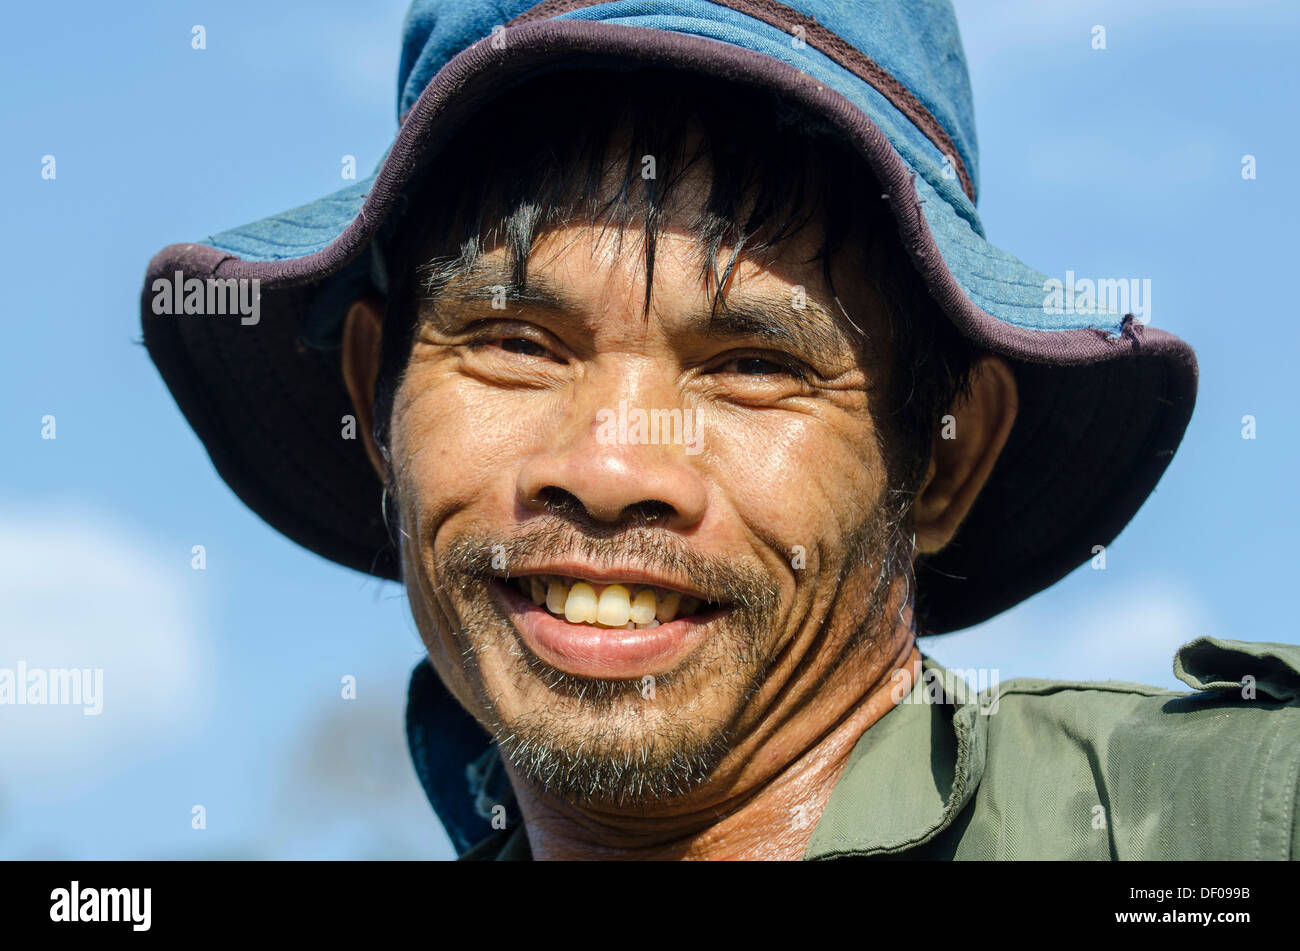 L'homme de la Shan ou Thai Yai minorité ethnique, portrait, Soppong ou Pang Mapha, région nord de la Thaïlande, la Thaïlande, l'Asie Banque D'Images